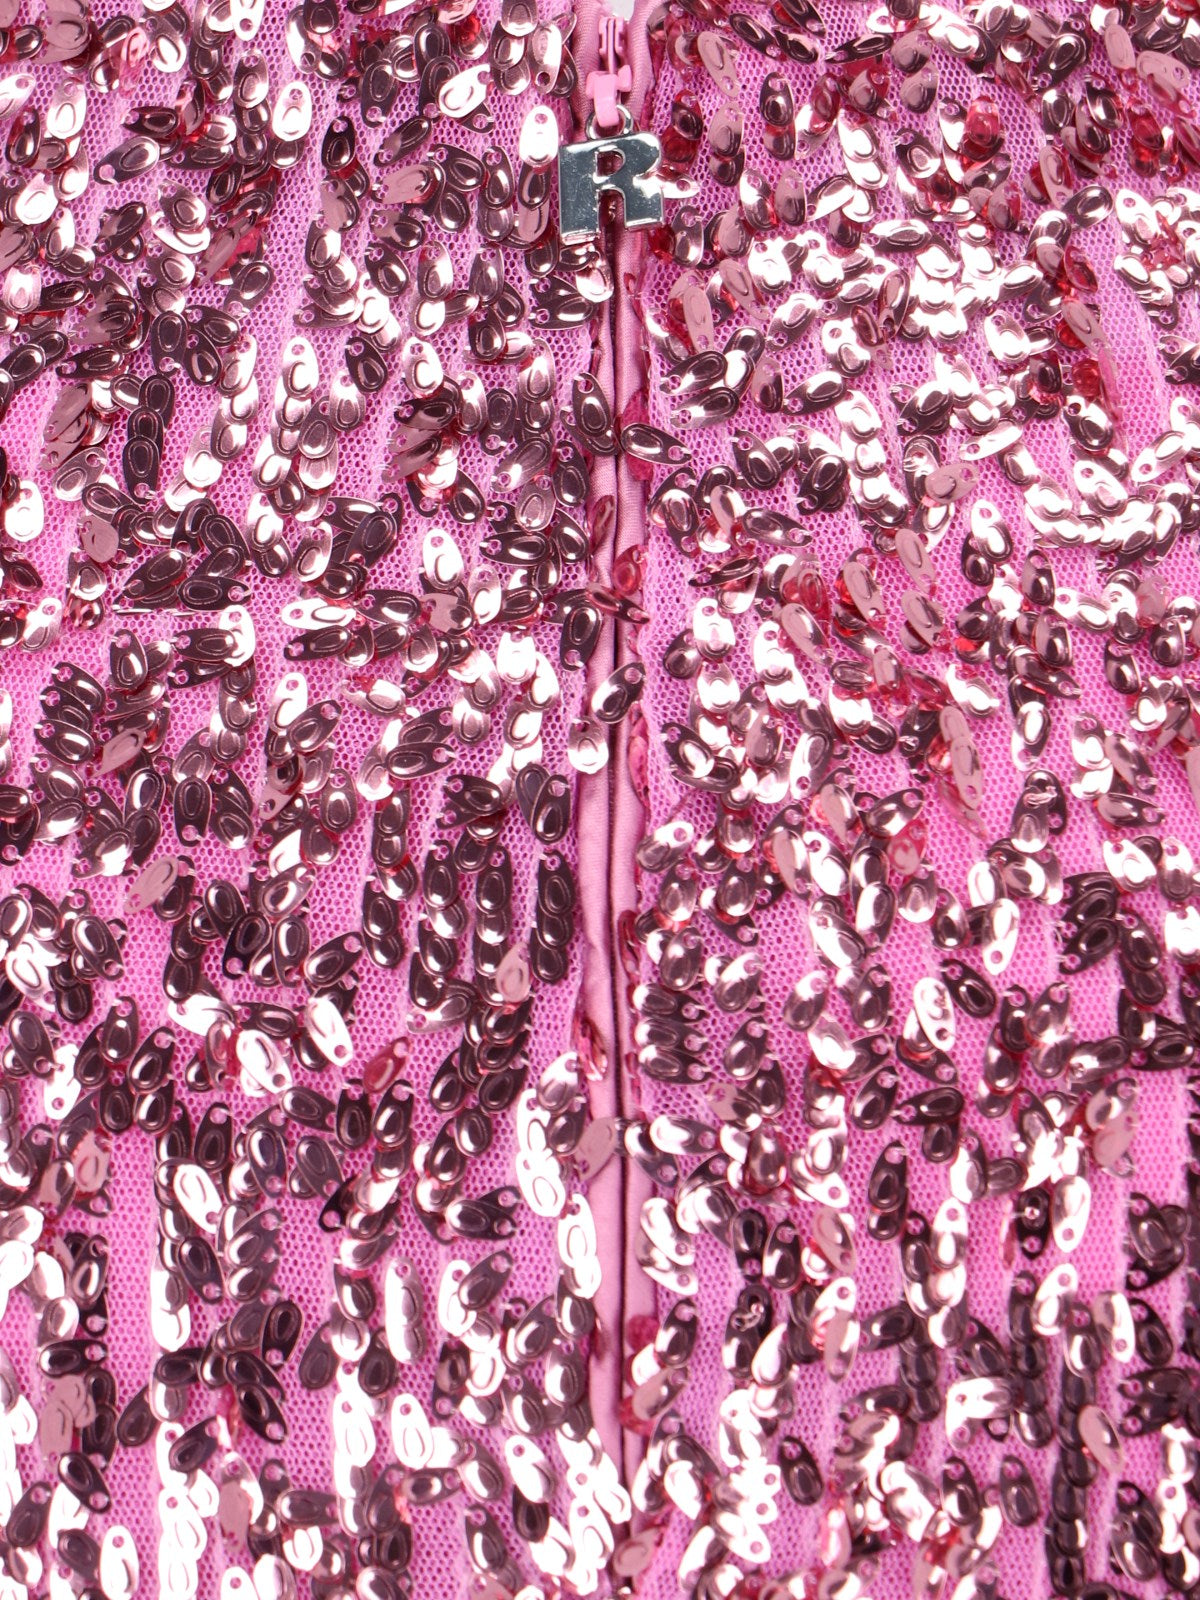 Rotate Birger Christensen Gonna Midi Paillettes-Gonne maxi-Rotate Birger Christensen-Gonna Midi Paillettes Rotate Birger Christensen, in tessuto rosa, design a tubino, chiusura a zip retro dettaglio logo metallico argentato, spacco centrale retro, orlo dritto.-Dresso